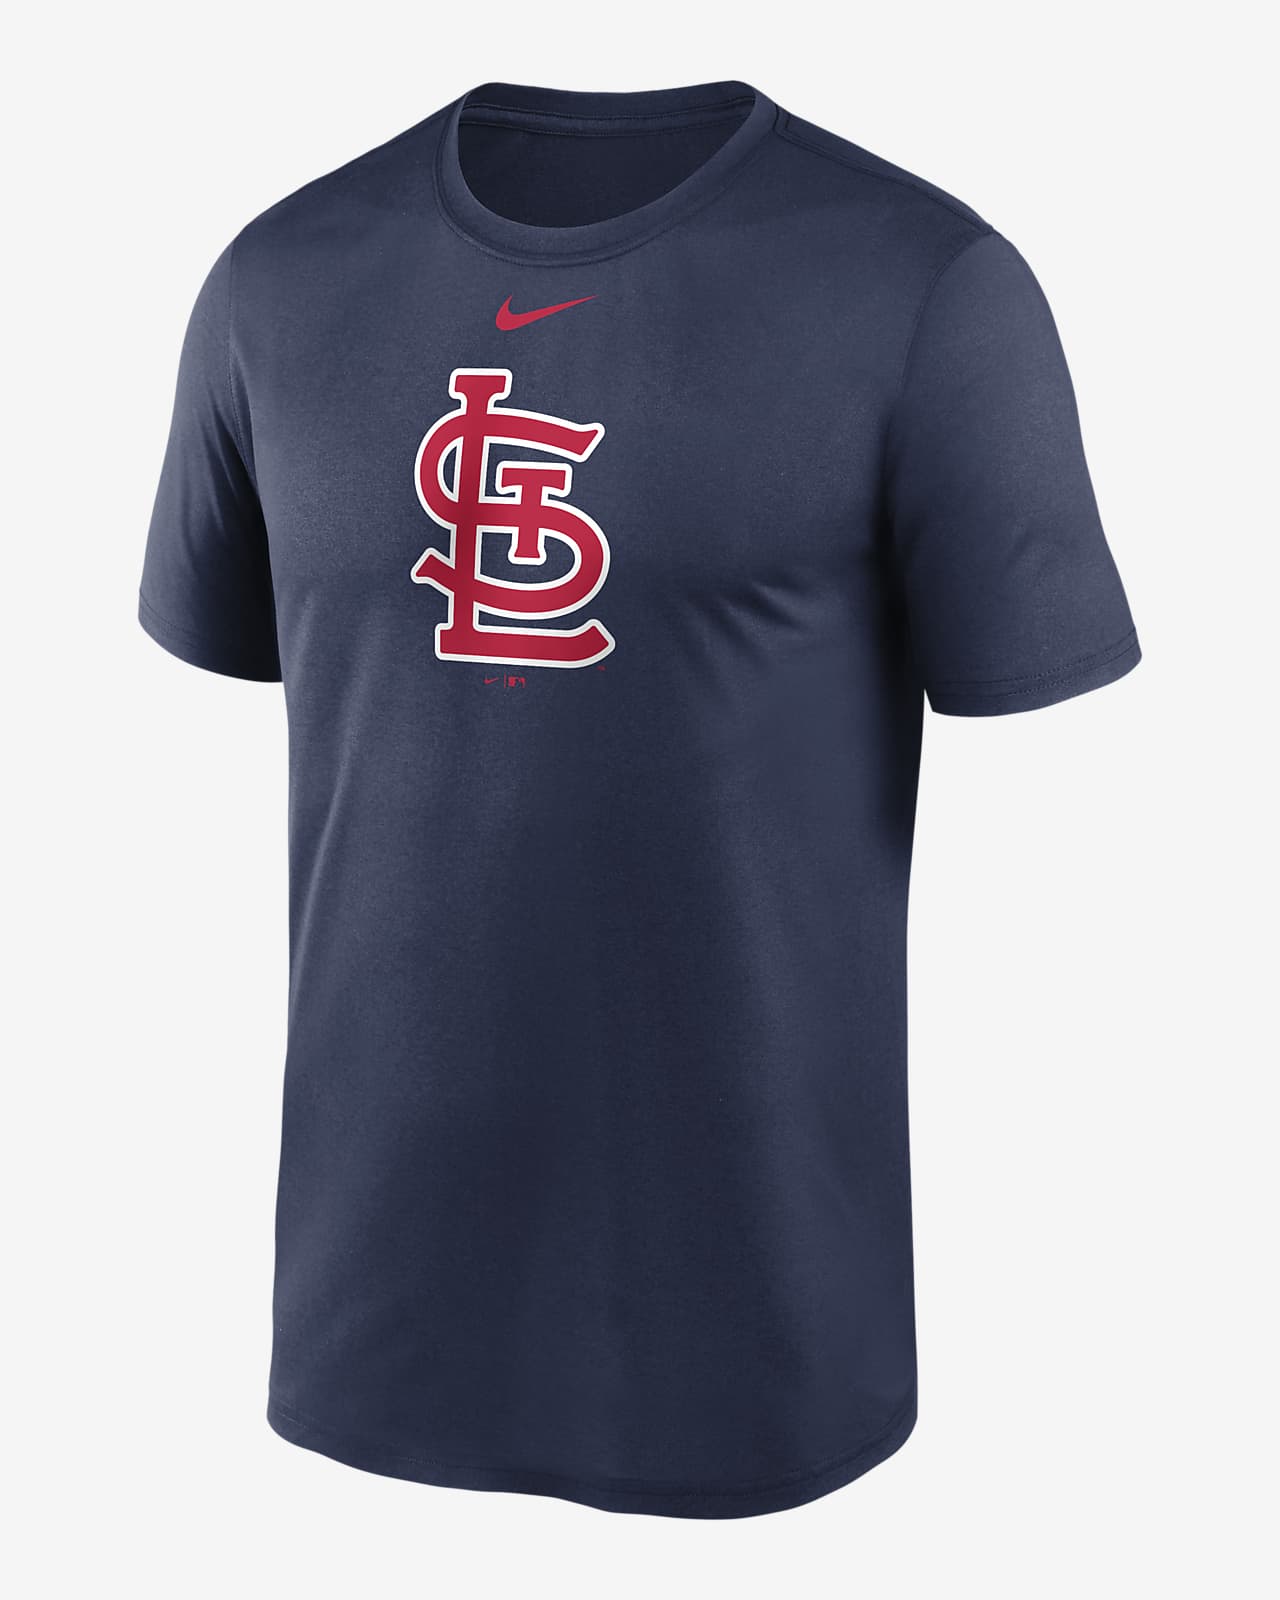 stl cardinals tee shirts